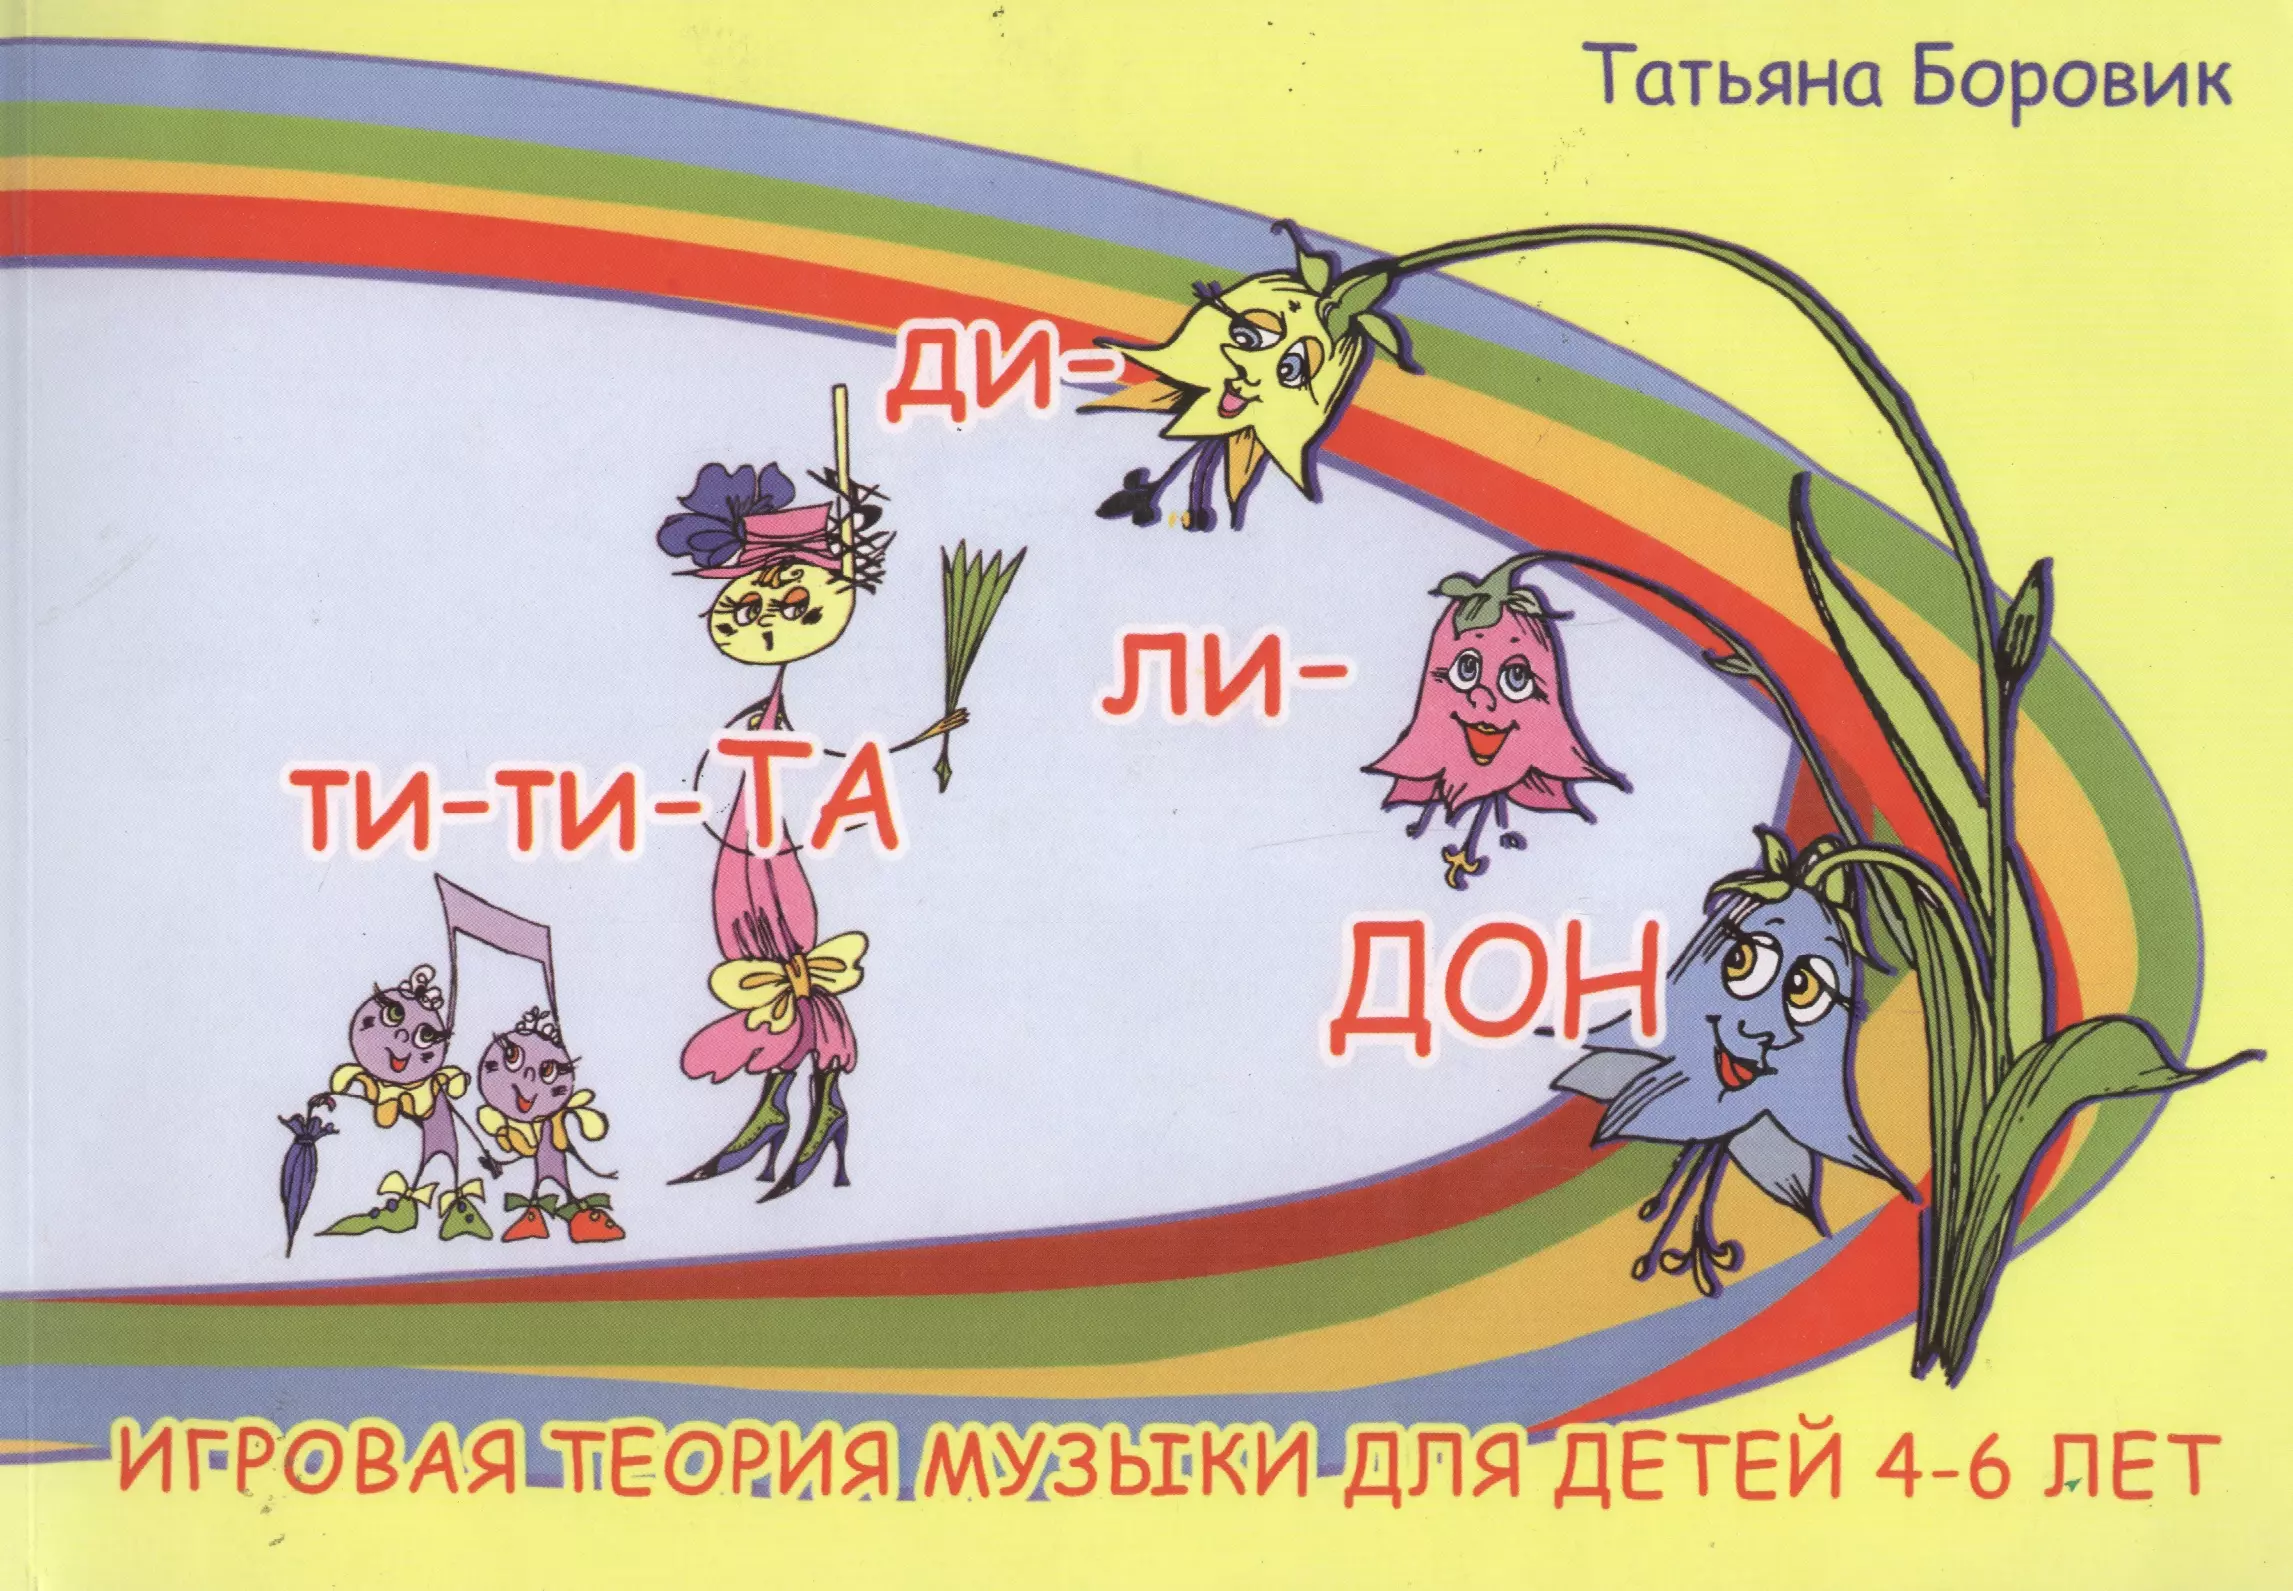 Ди ли ру. Игровая теория музыки для детей 4-6 лет. Теория музыки для детей книга. Книги Боровик Татьяны Анатольевны. Музыкальная теория для детей.